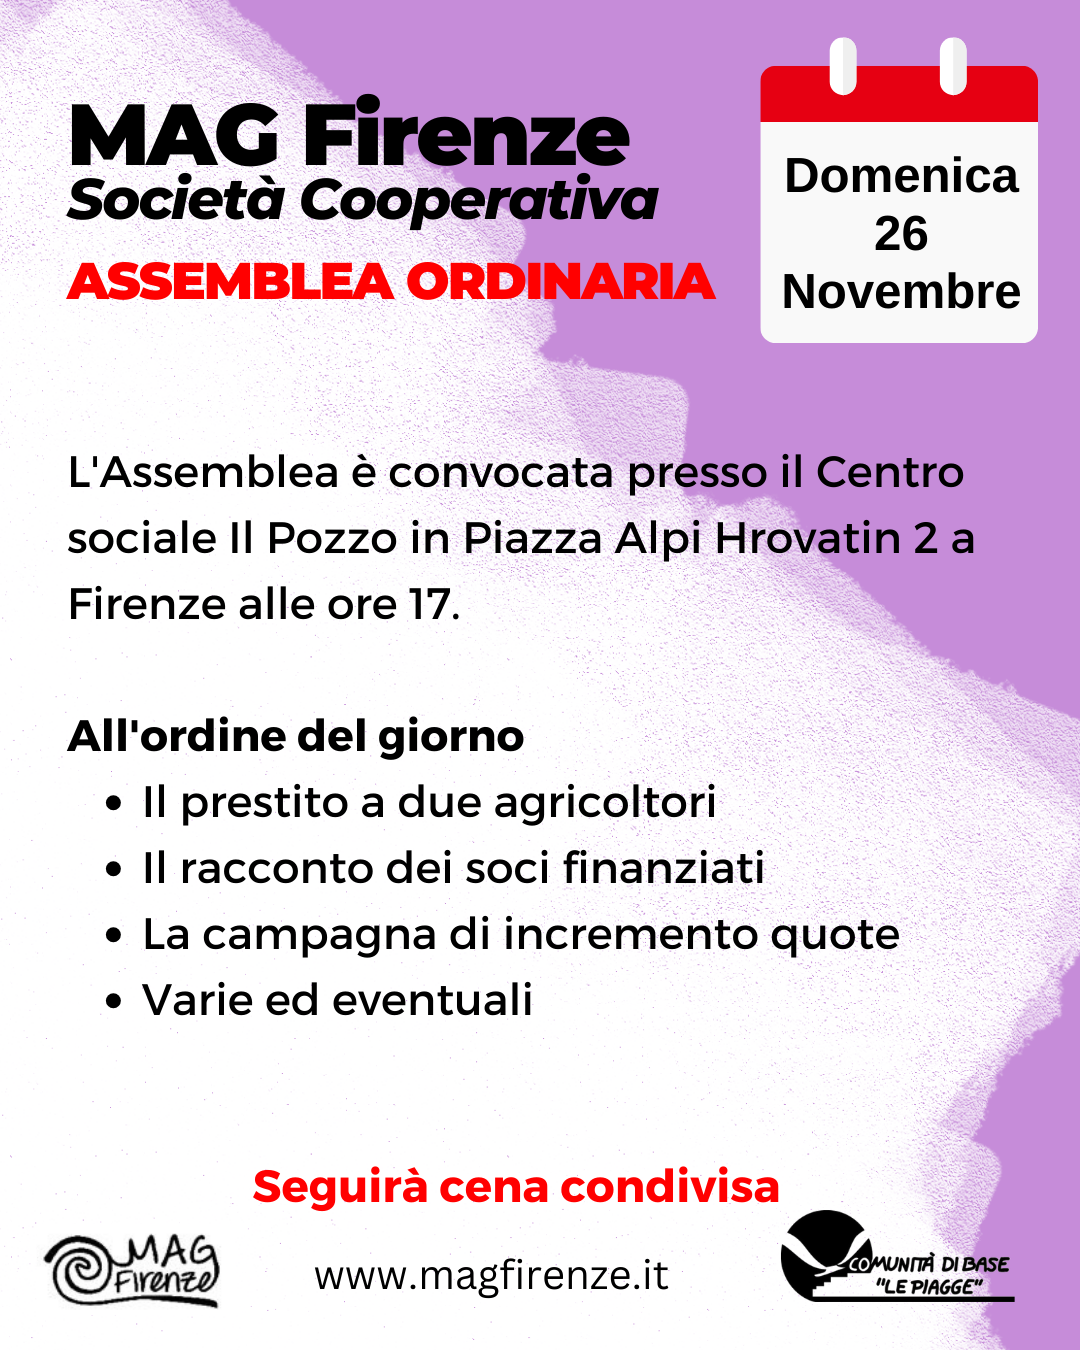 Domenica 26 novembre Assemblea MAG Firenze. Come partecipare